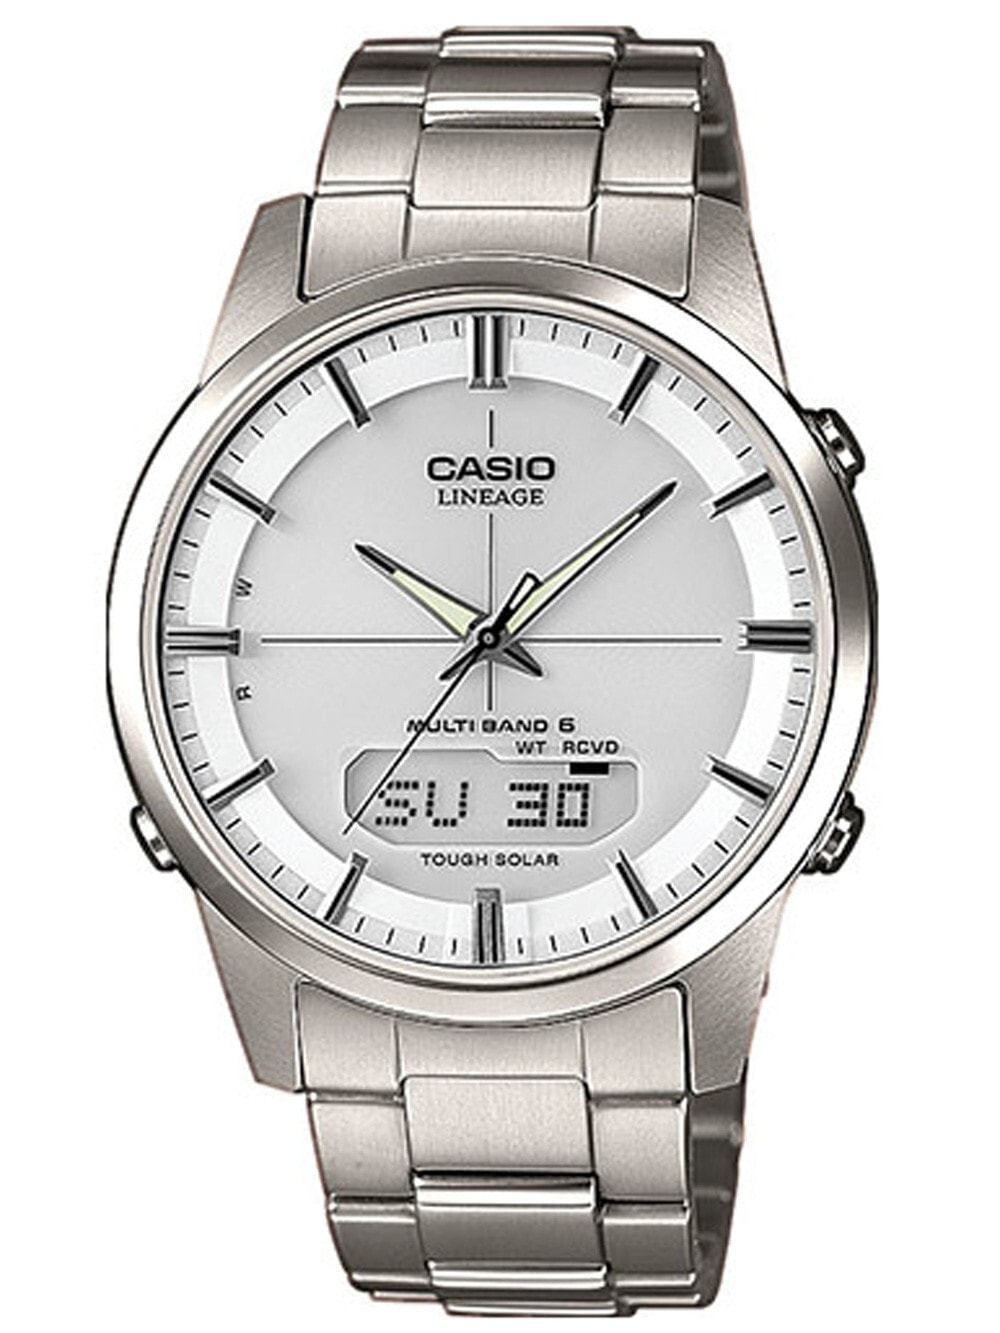 Мужские наручные часы с серебряным браслетом CASIO LCW-M170TD-7AER Radio Controlled Solar 40mm 5 ATM